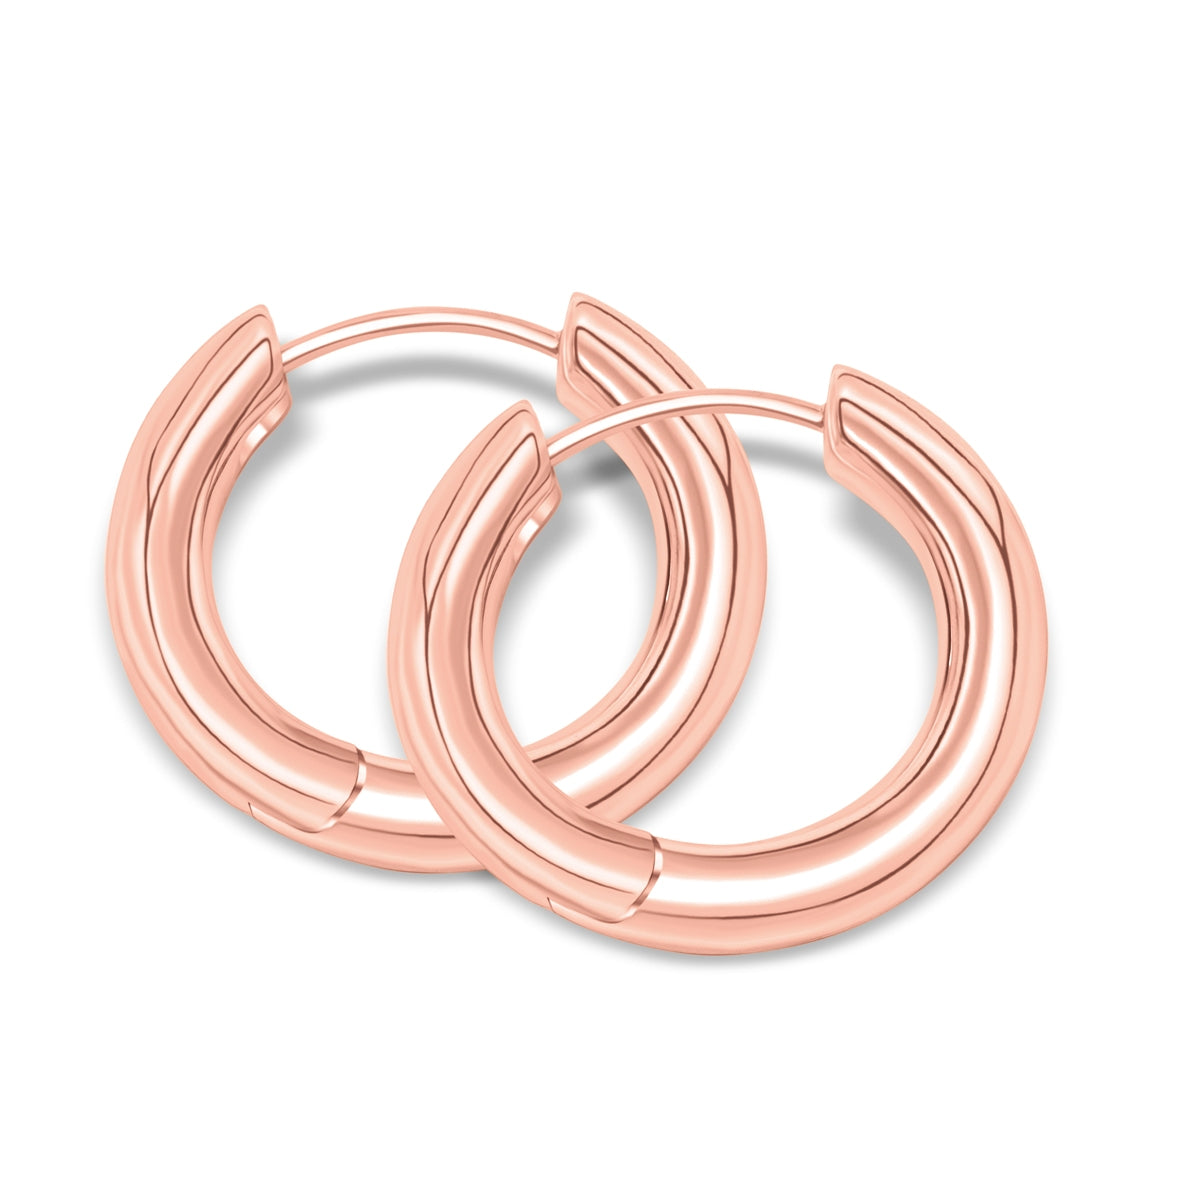 Rose gold plated simple hoop earrings